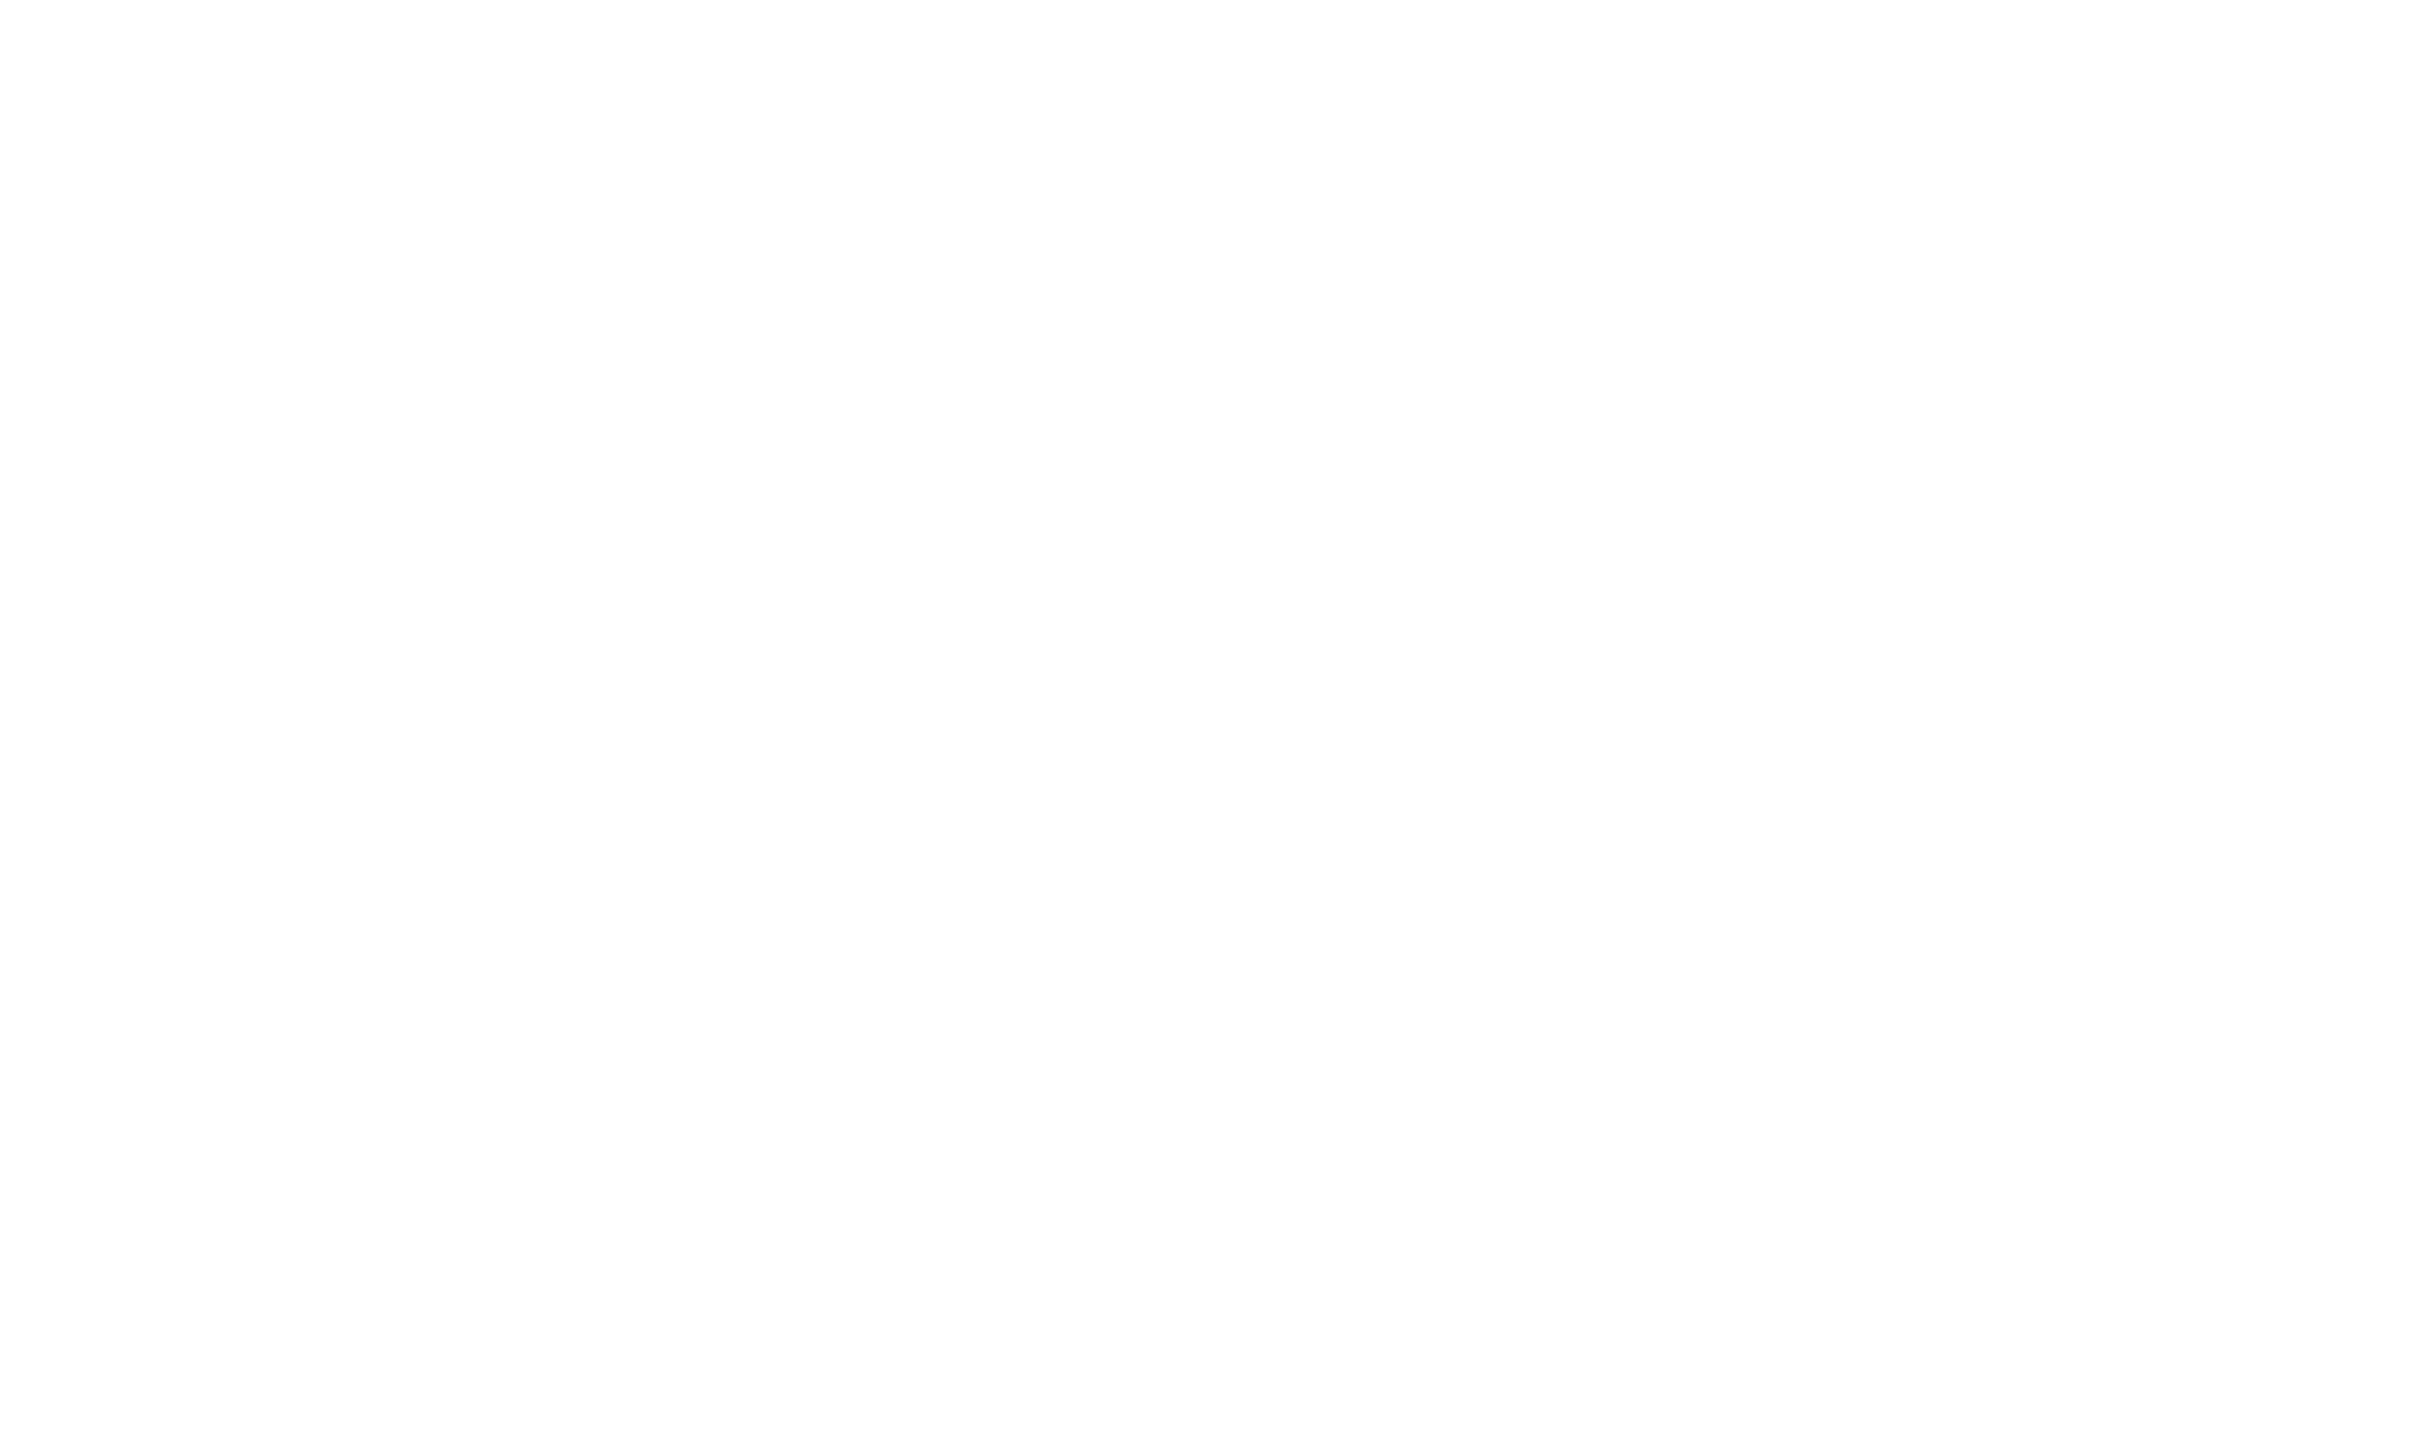 OVG360